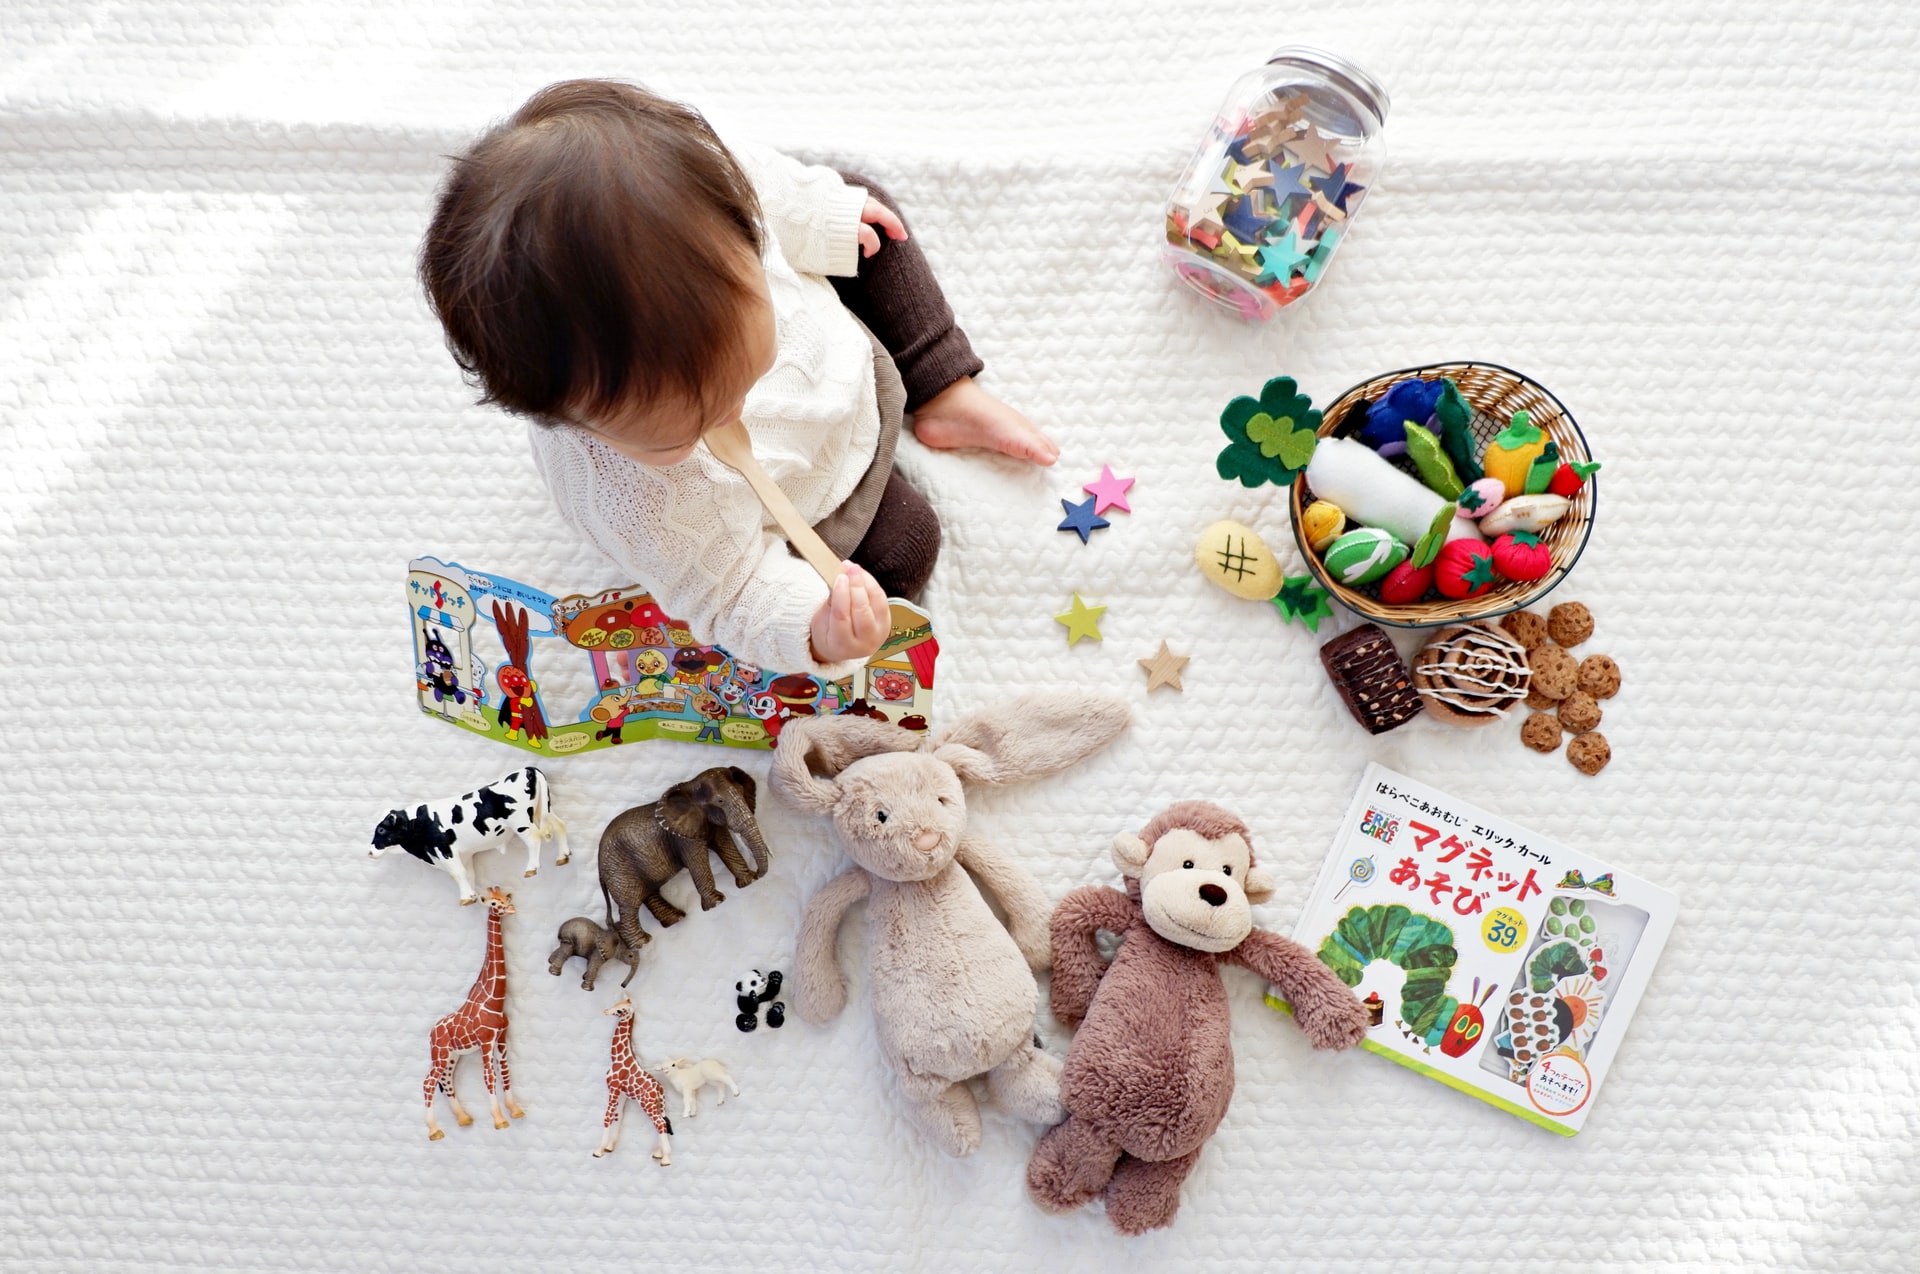 出産祝いにおすすめのおもちゃ10選 男の子も女の子も喜ぶ知育玩具や木のおもちゃを紹介